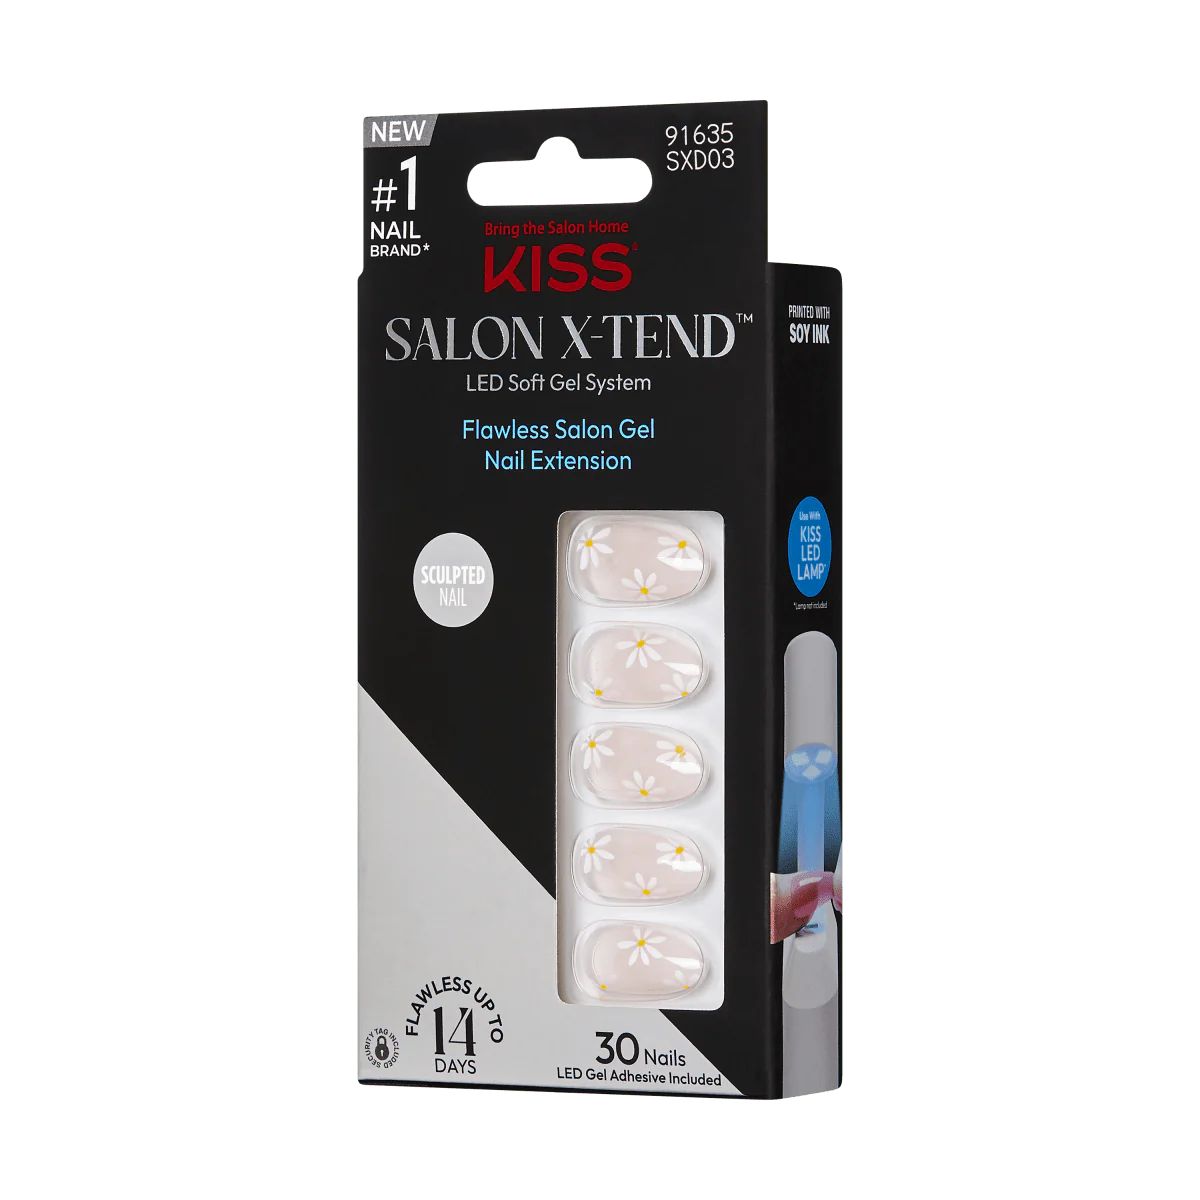 KISS Salon X-tend LED Soft Gel System Decorated Nails, Pink, Medium Almond, 34 Ct. | KISS, imPRESS, JOAH